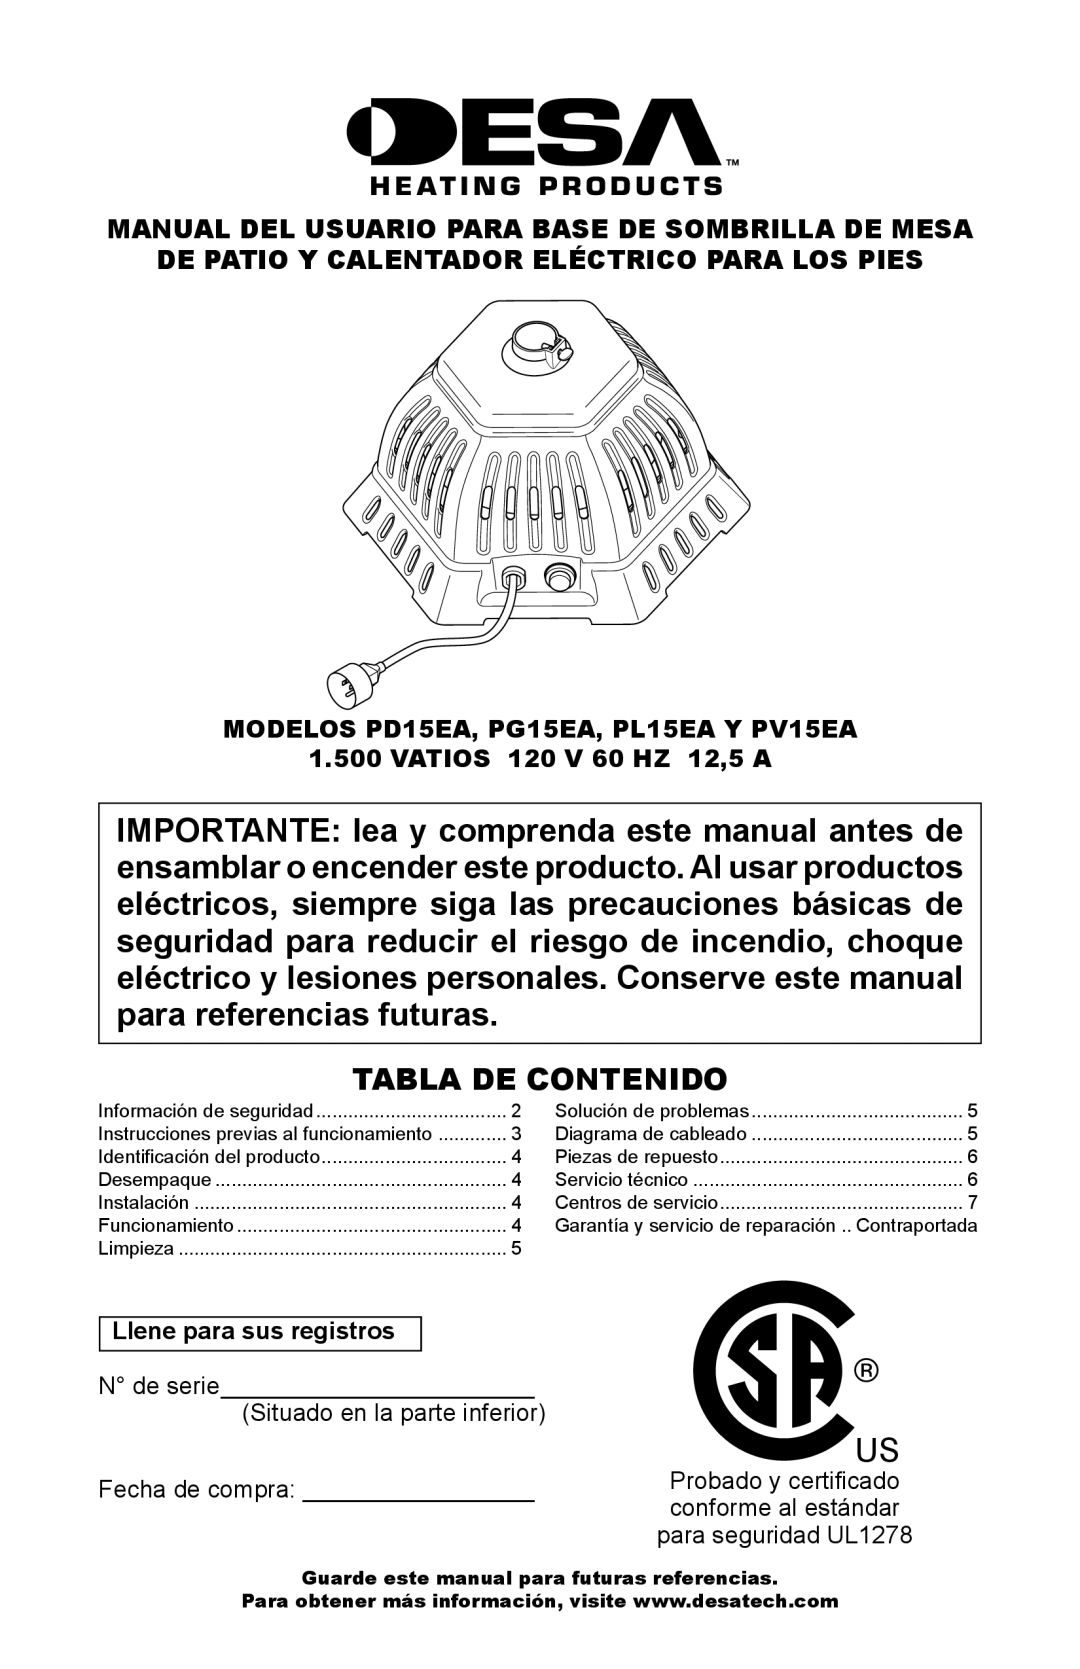 Desa PD15EA owner manual Tabla De Contenido, Manual Del Usuario Para Base De Sombrilla De Mesa 